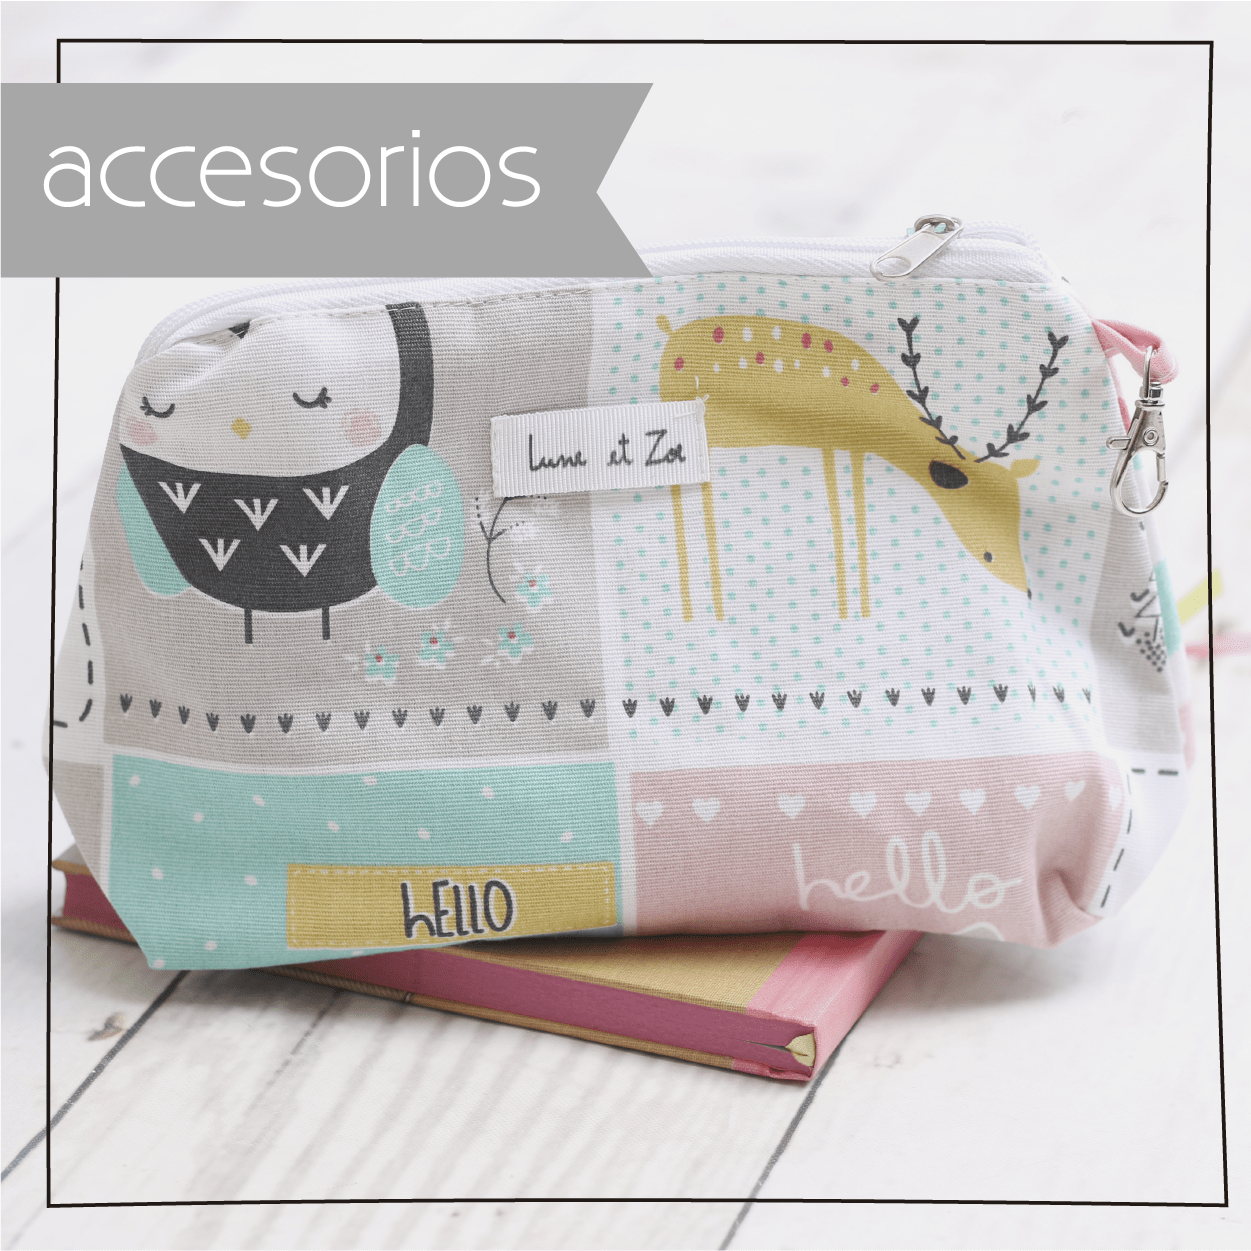 Banner de Lune et Zoe - Tienda online de Bolsos, Carteras y accesorios de moda